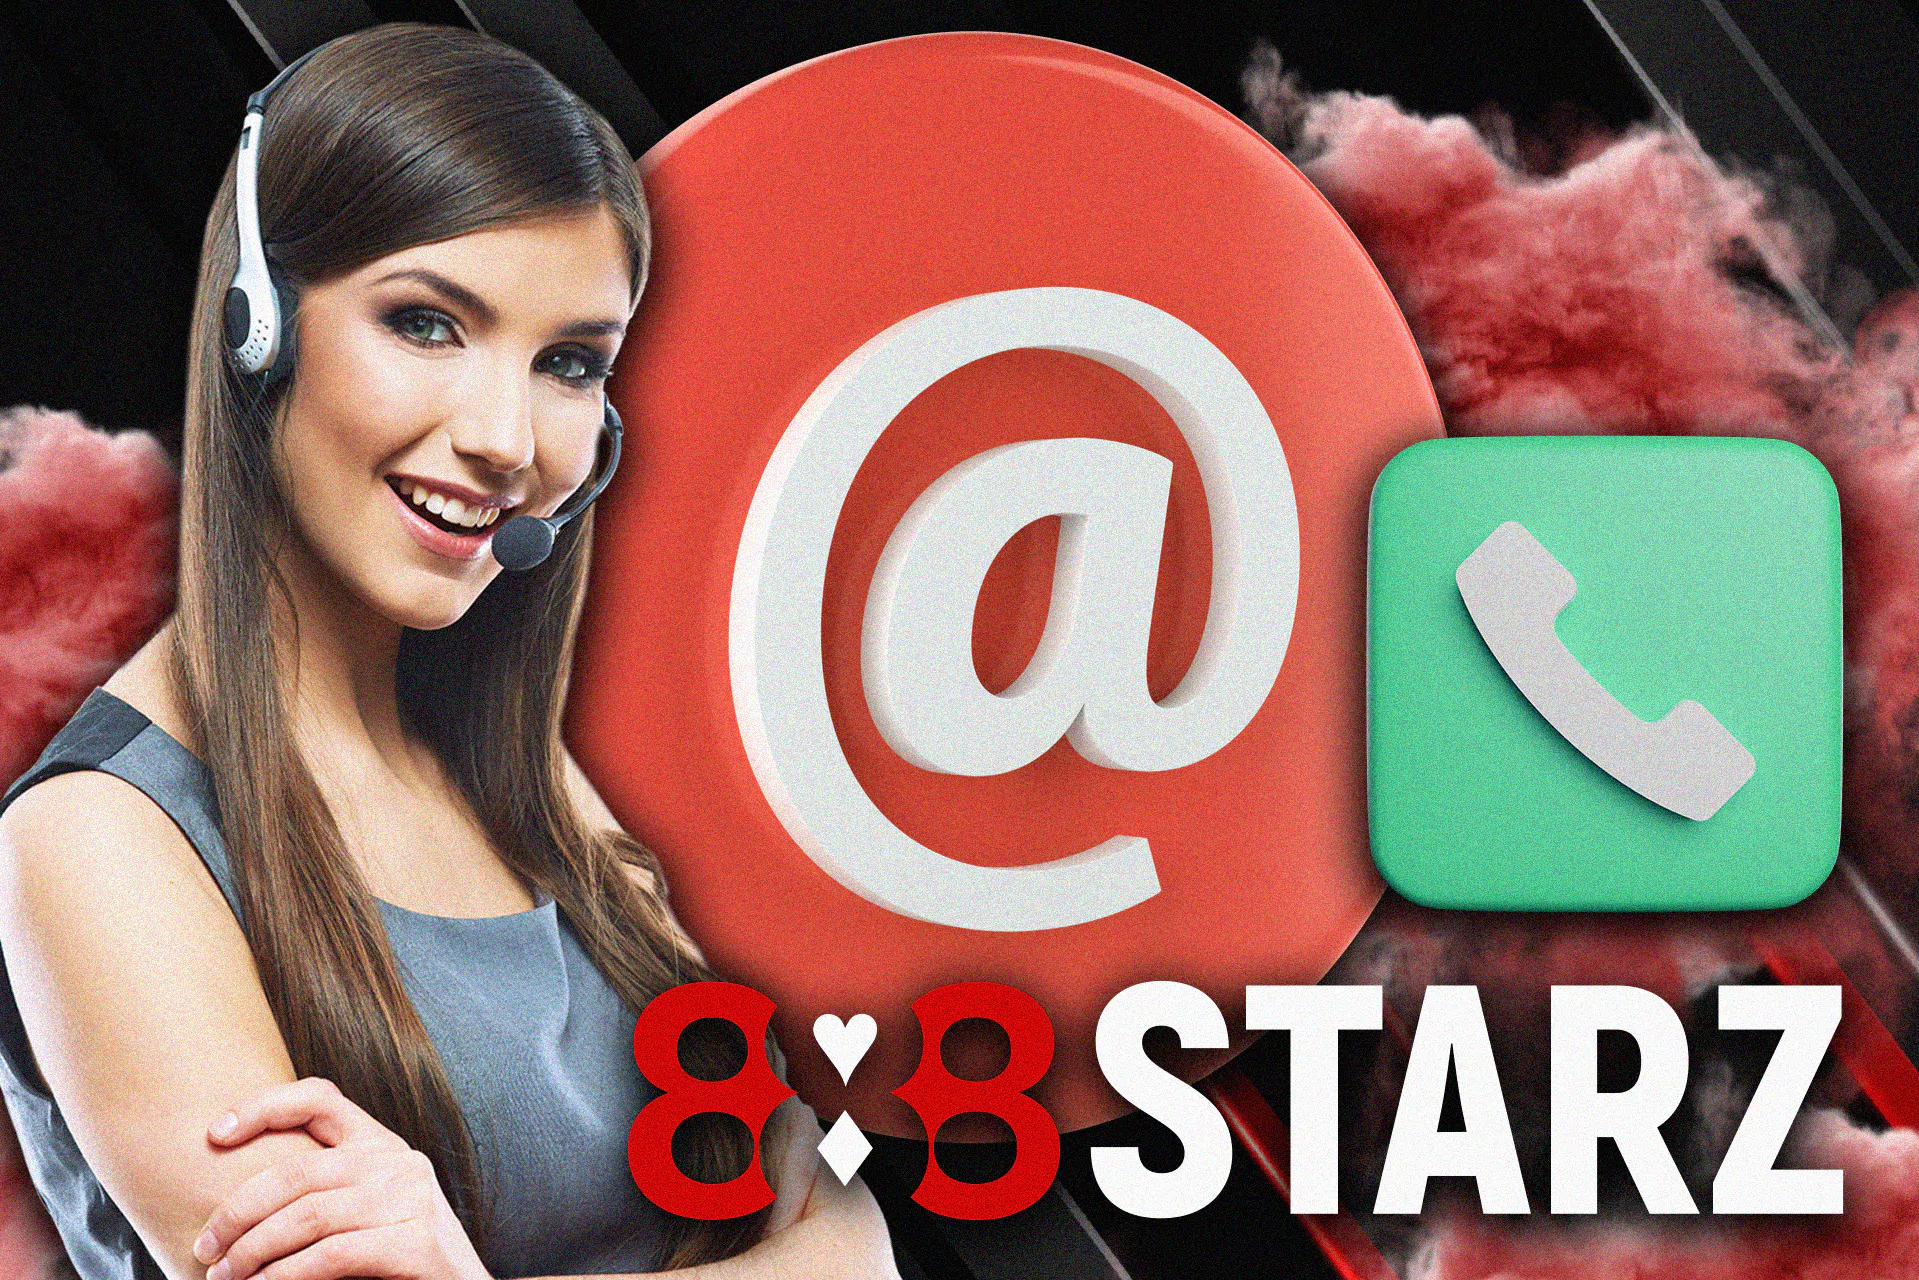 888starz टीम तक पहुंचने के लिए इनमें से किसी भी संपर्क का उपयोग करें।